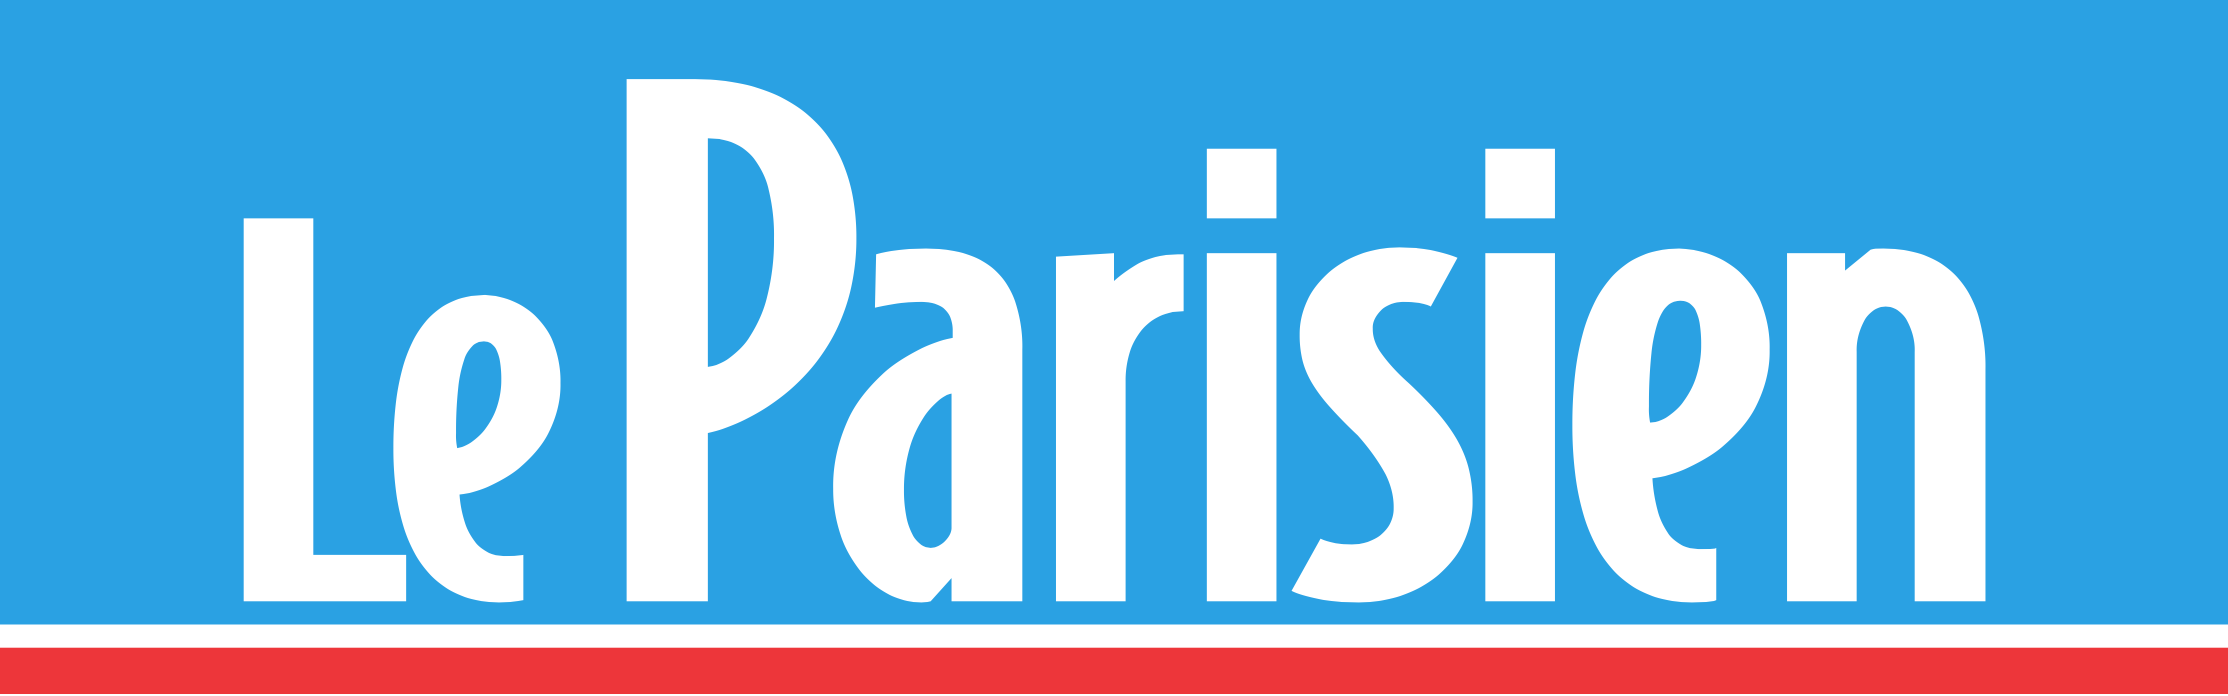 Le_Parisien_logo